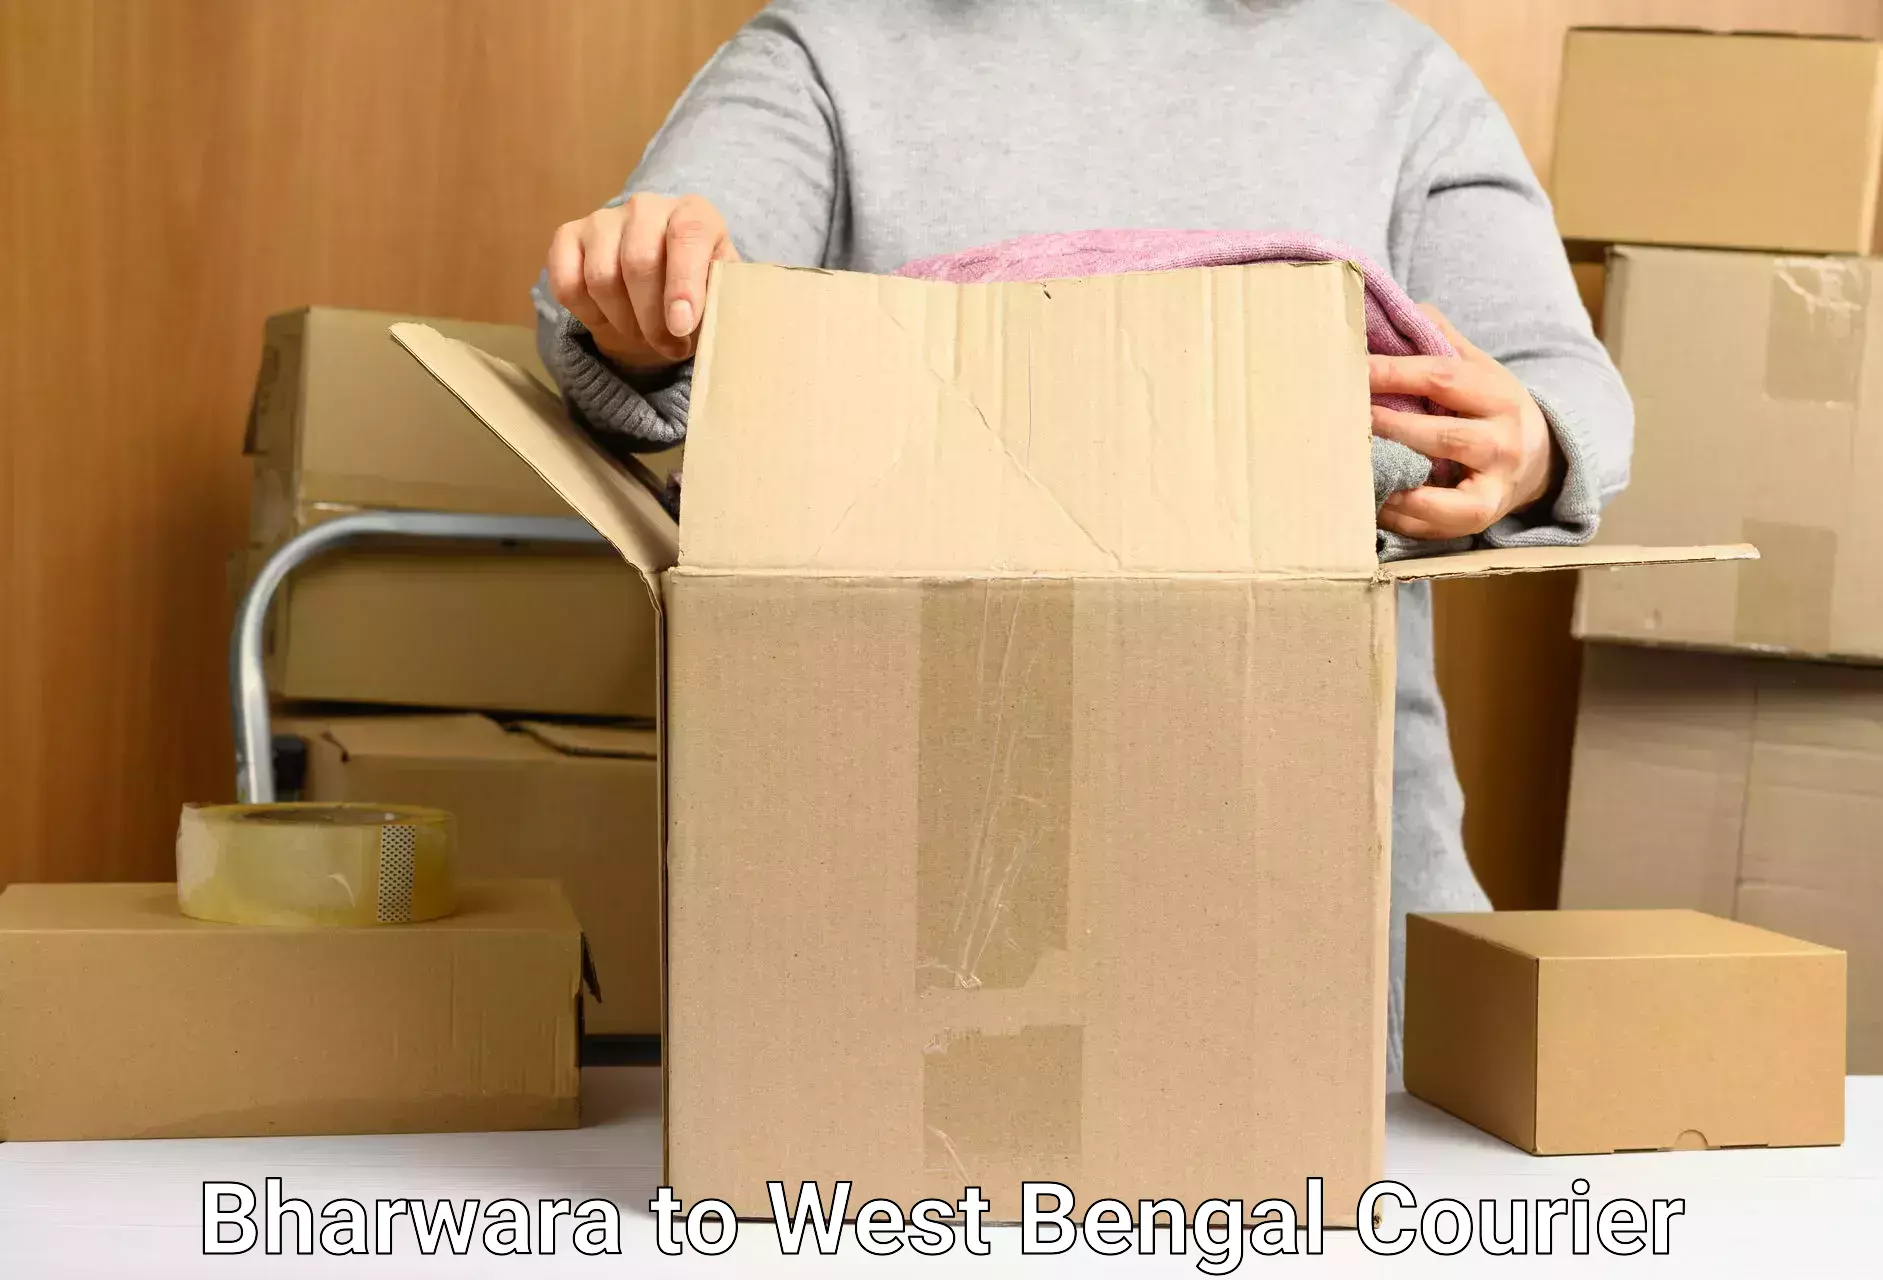 International parcel service Bharwara to Durgapur